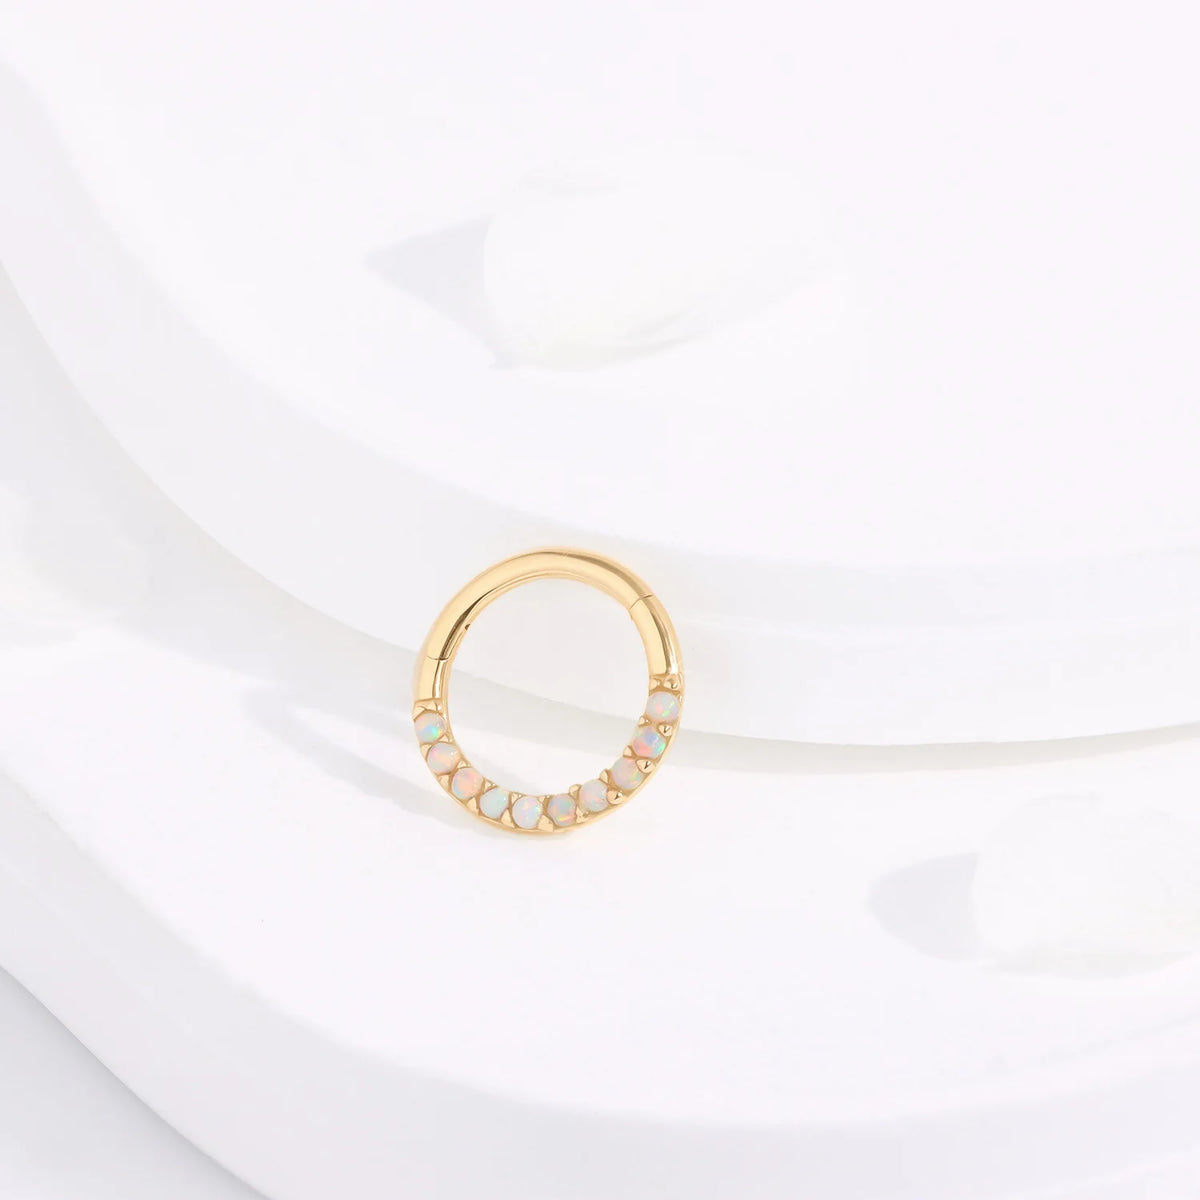 Opale nez piercing 14K or opale cerceau boucle d’oreille segment articulé clicker septum anneau daith piercing